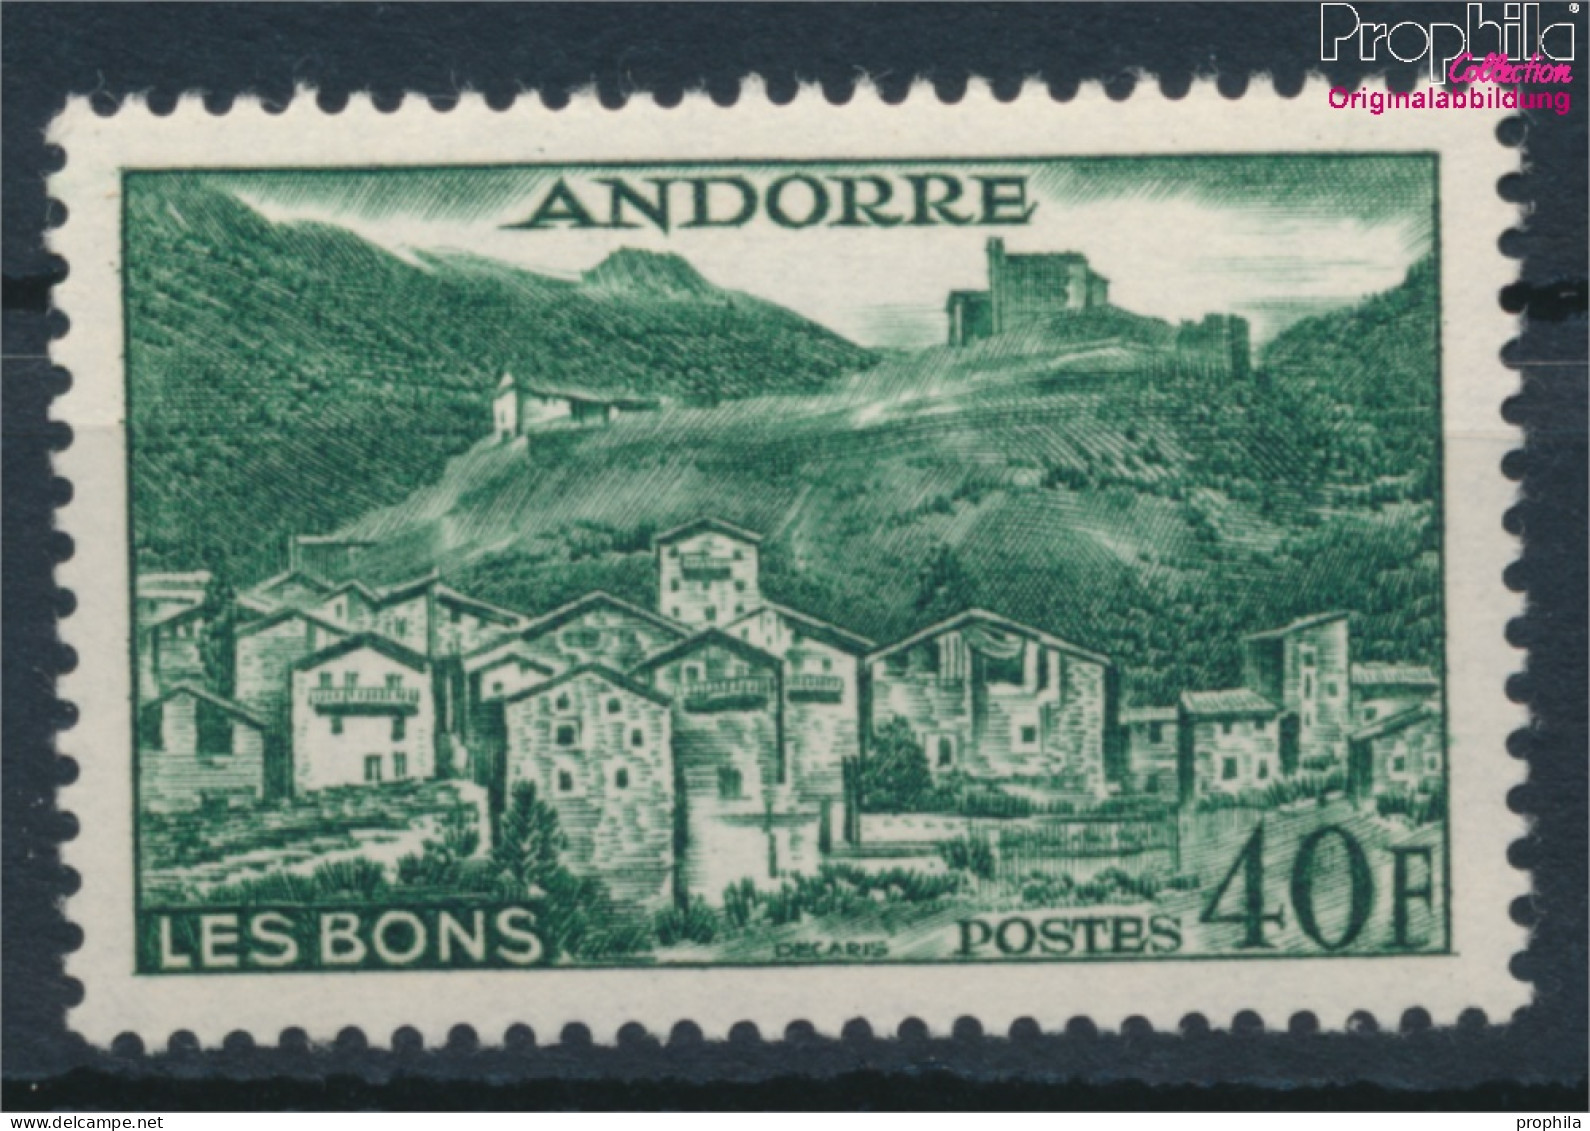 Andorra - Französische Post 155 Postfrisch 1955 Landschaften (10368396 - Unused Stamps